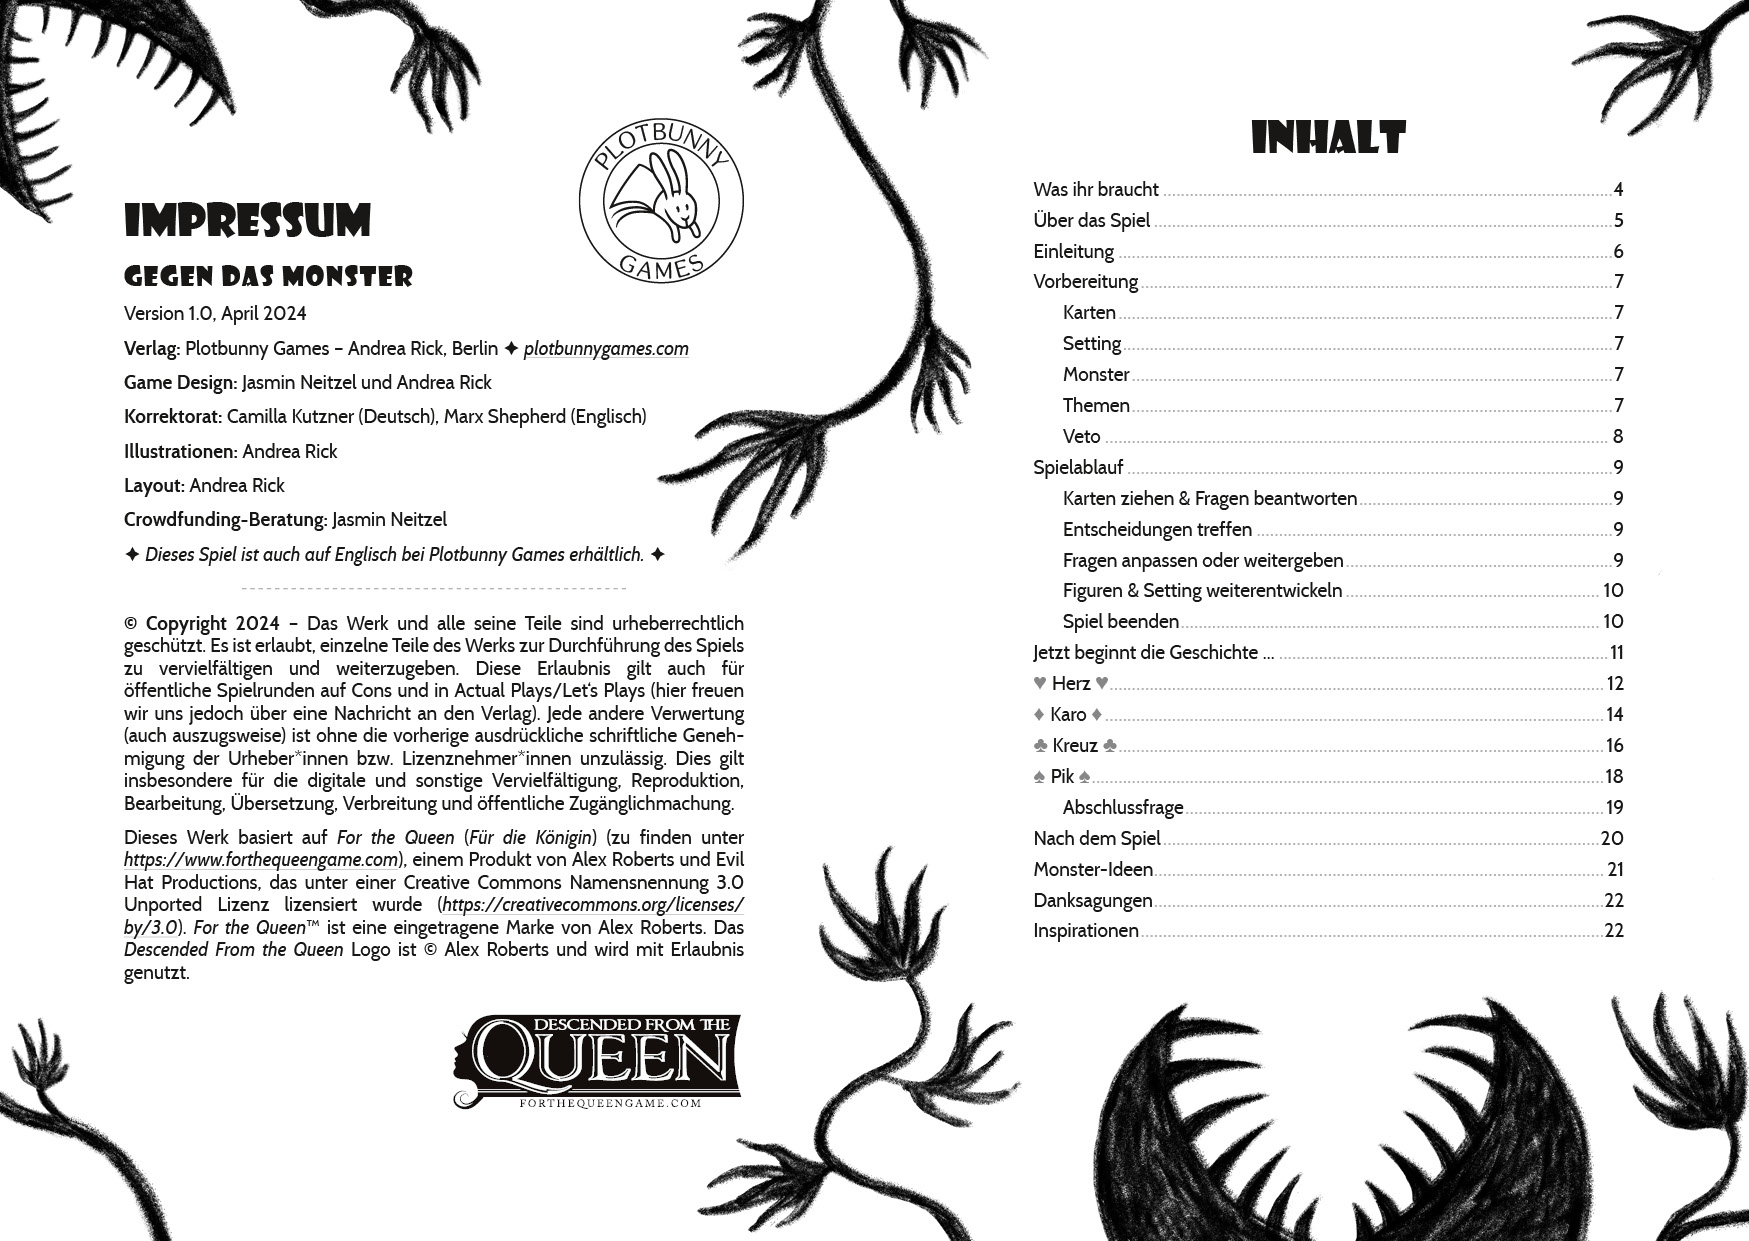 Doppelseite mit Impressum und Inhaltsverzeichnis aus "Gegen das Monster". Um den Text herum sind mit Kohlestift schwarze Silhouetten von fleischfressenden Pflanzen mit spitzen Zähnen und handförmigen Blättern gezeichnet.